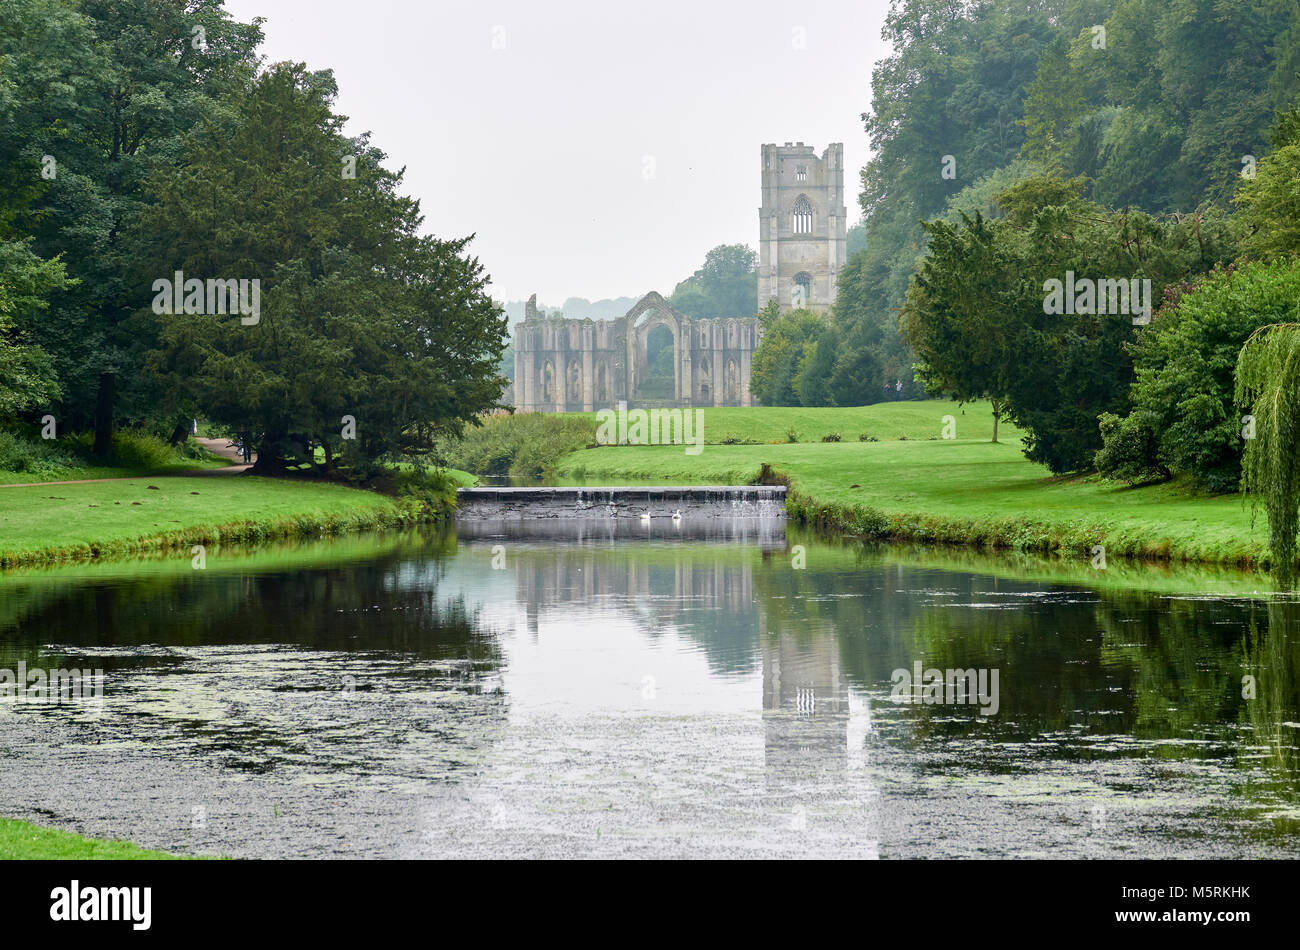 FOUNTAINS ABBEY, RIPON, England, Großbritannien - September 04, 2017: Zisterzienserkloster Grundstück und die Ruinen von Fountains Abbey in North Yorkshire, England, UK. Stockfoto